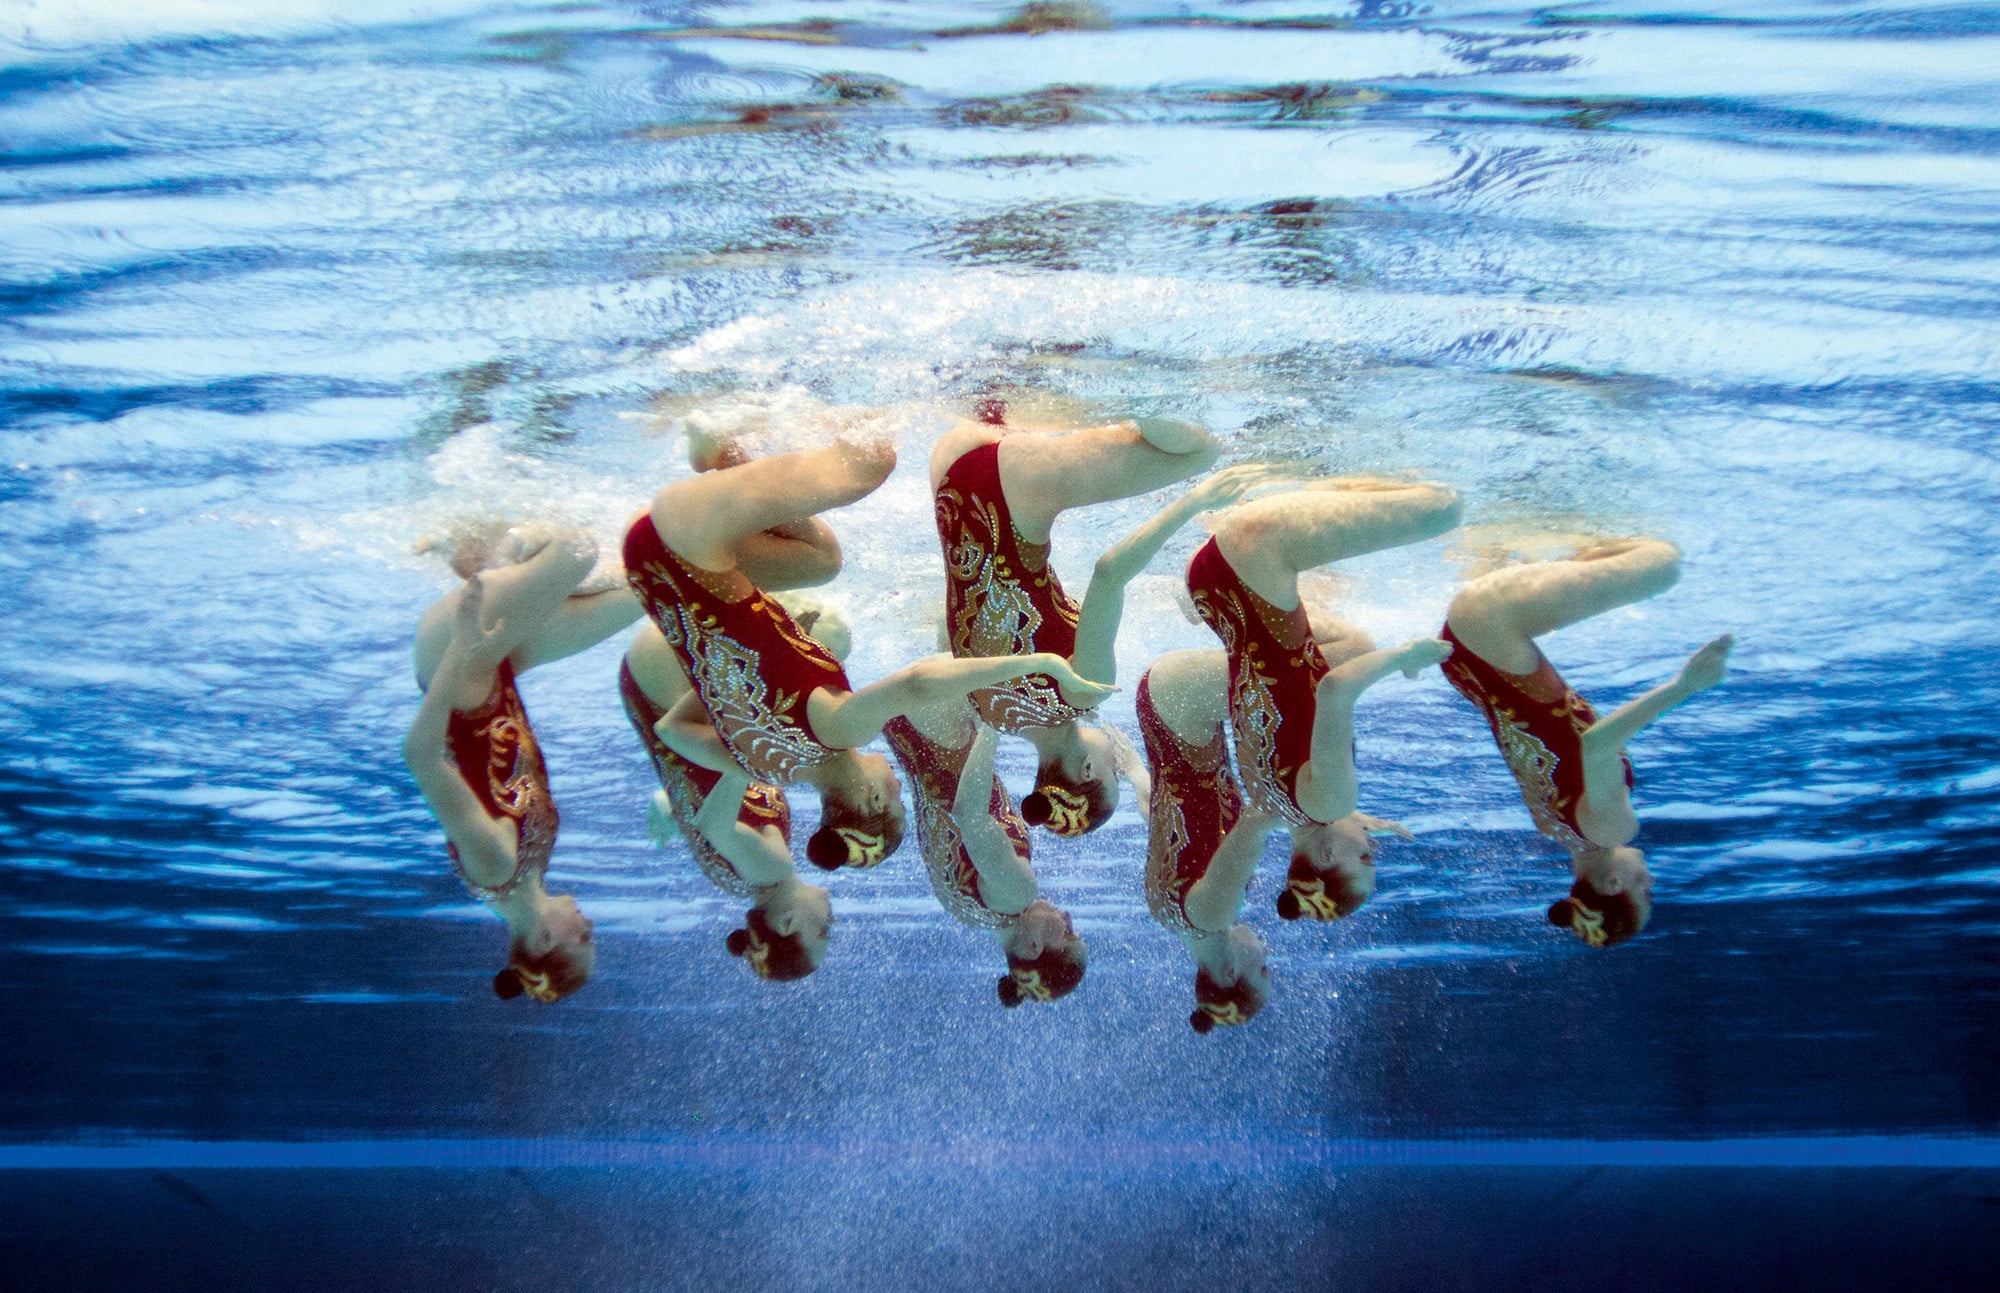 Синхронно диахронный. Синхронное плавание 1984. Фигурное плавание. Синхронистки под водой. Водный балет синхронное плавание.